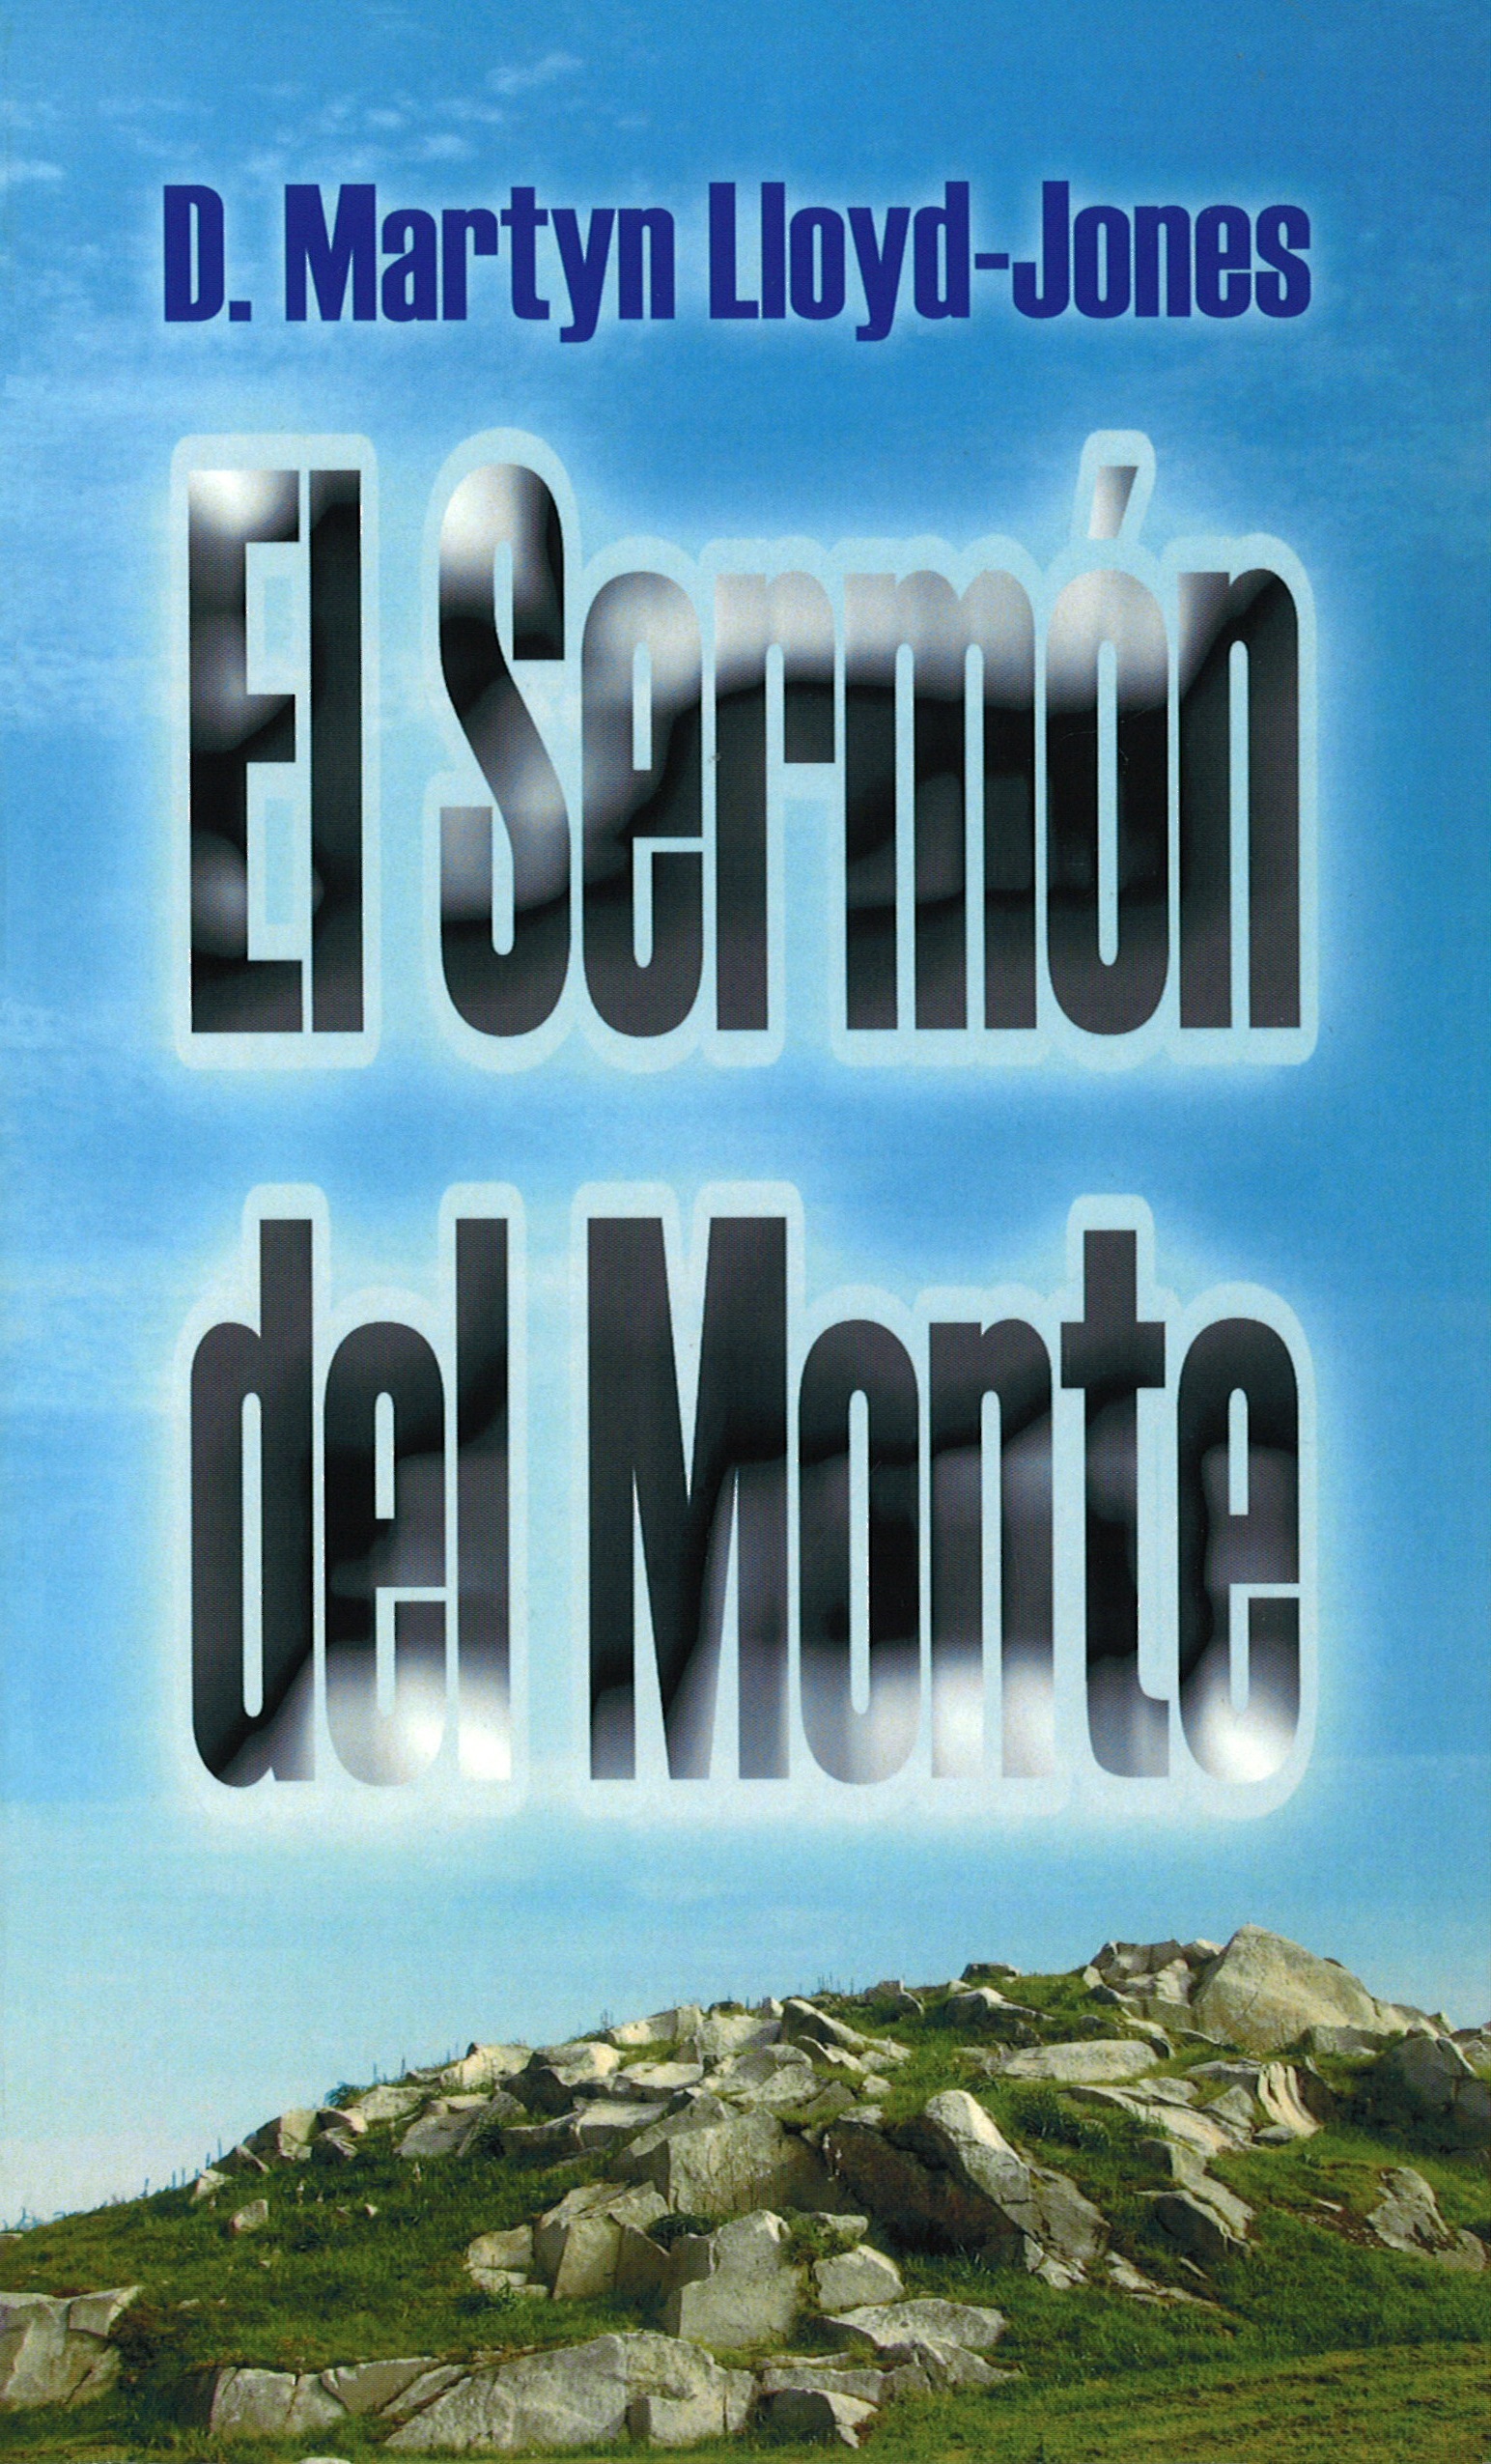 Book Cover For 'El Sermón del Monte'